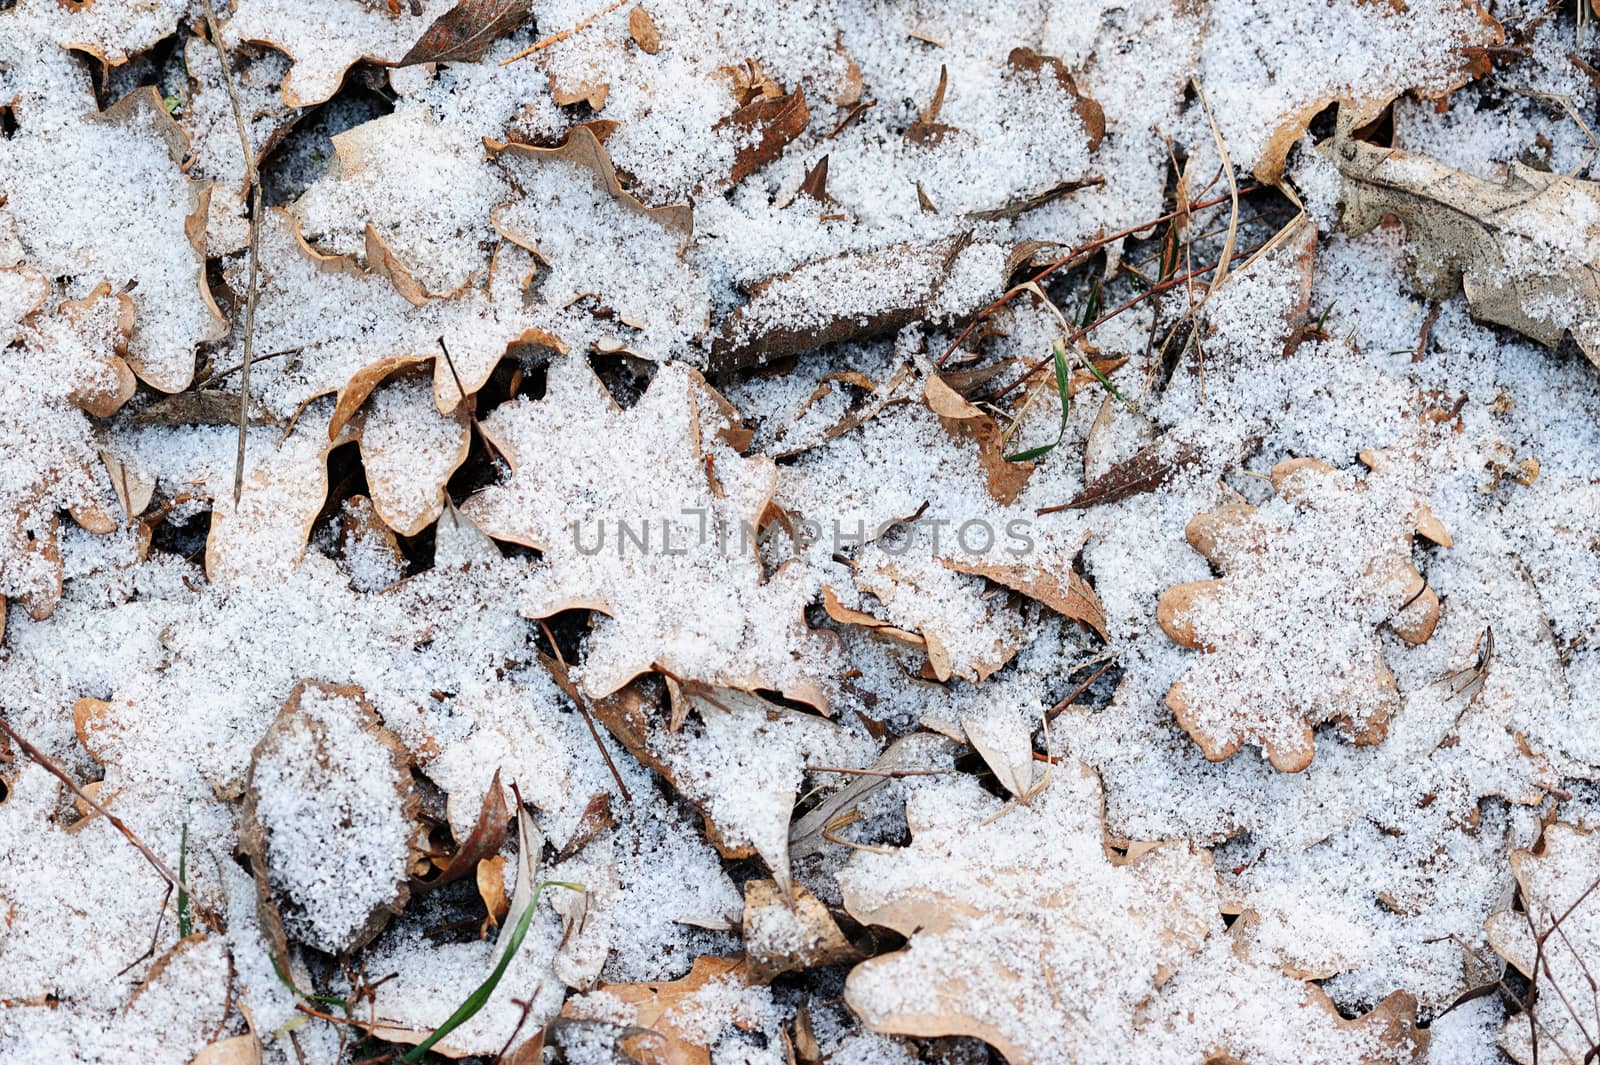 Oak leafs under snow in winter